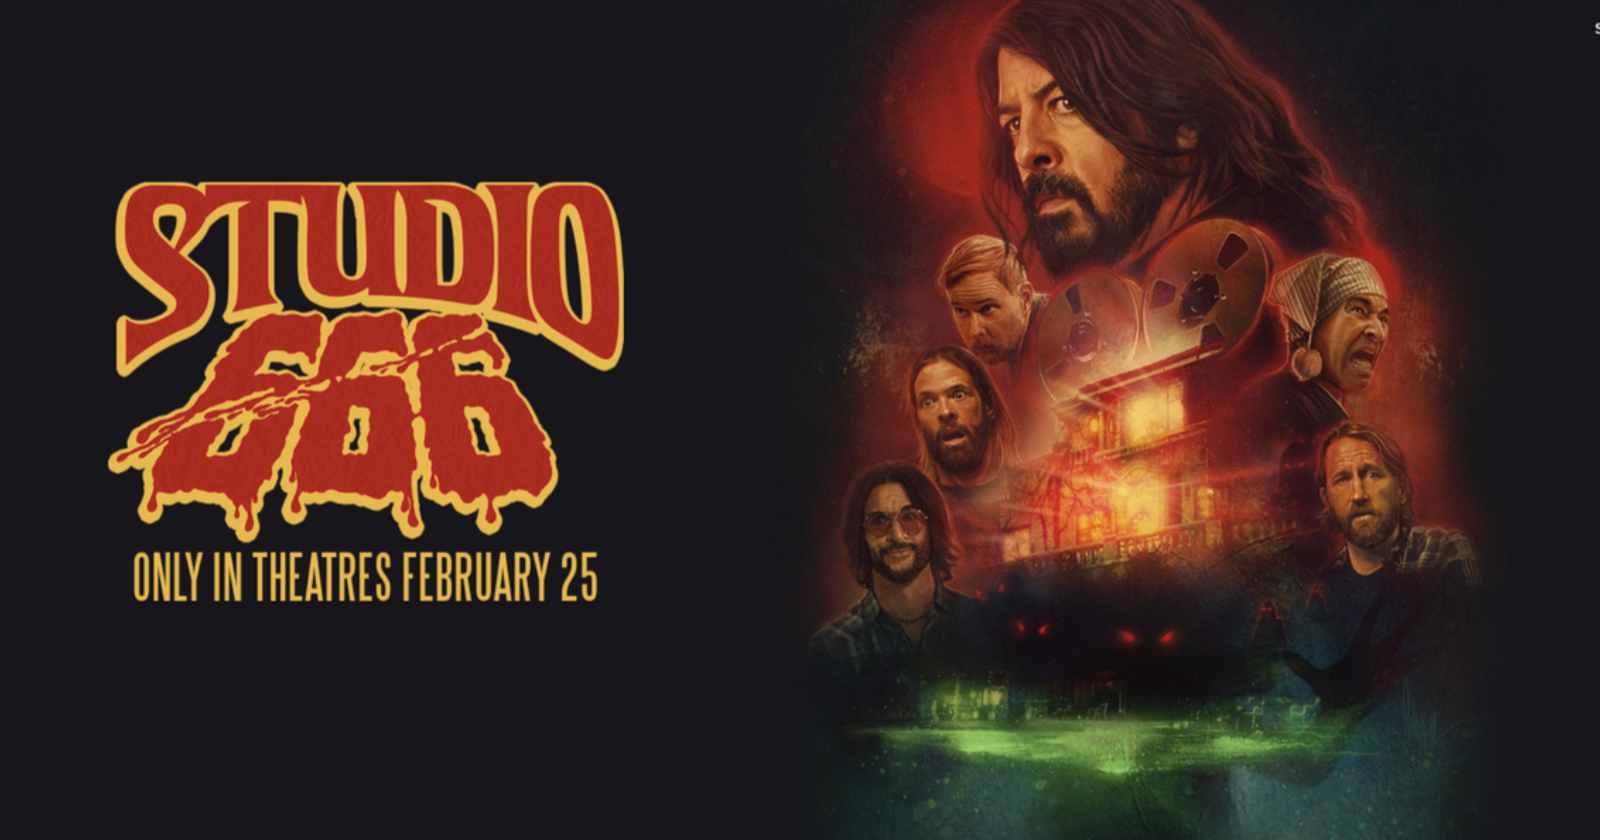 Foo Fighters Studio 666